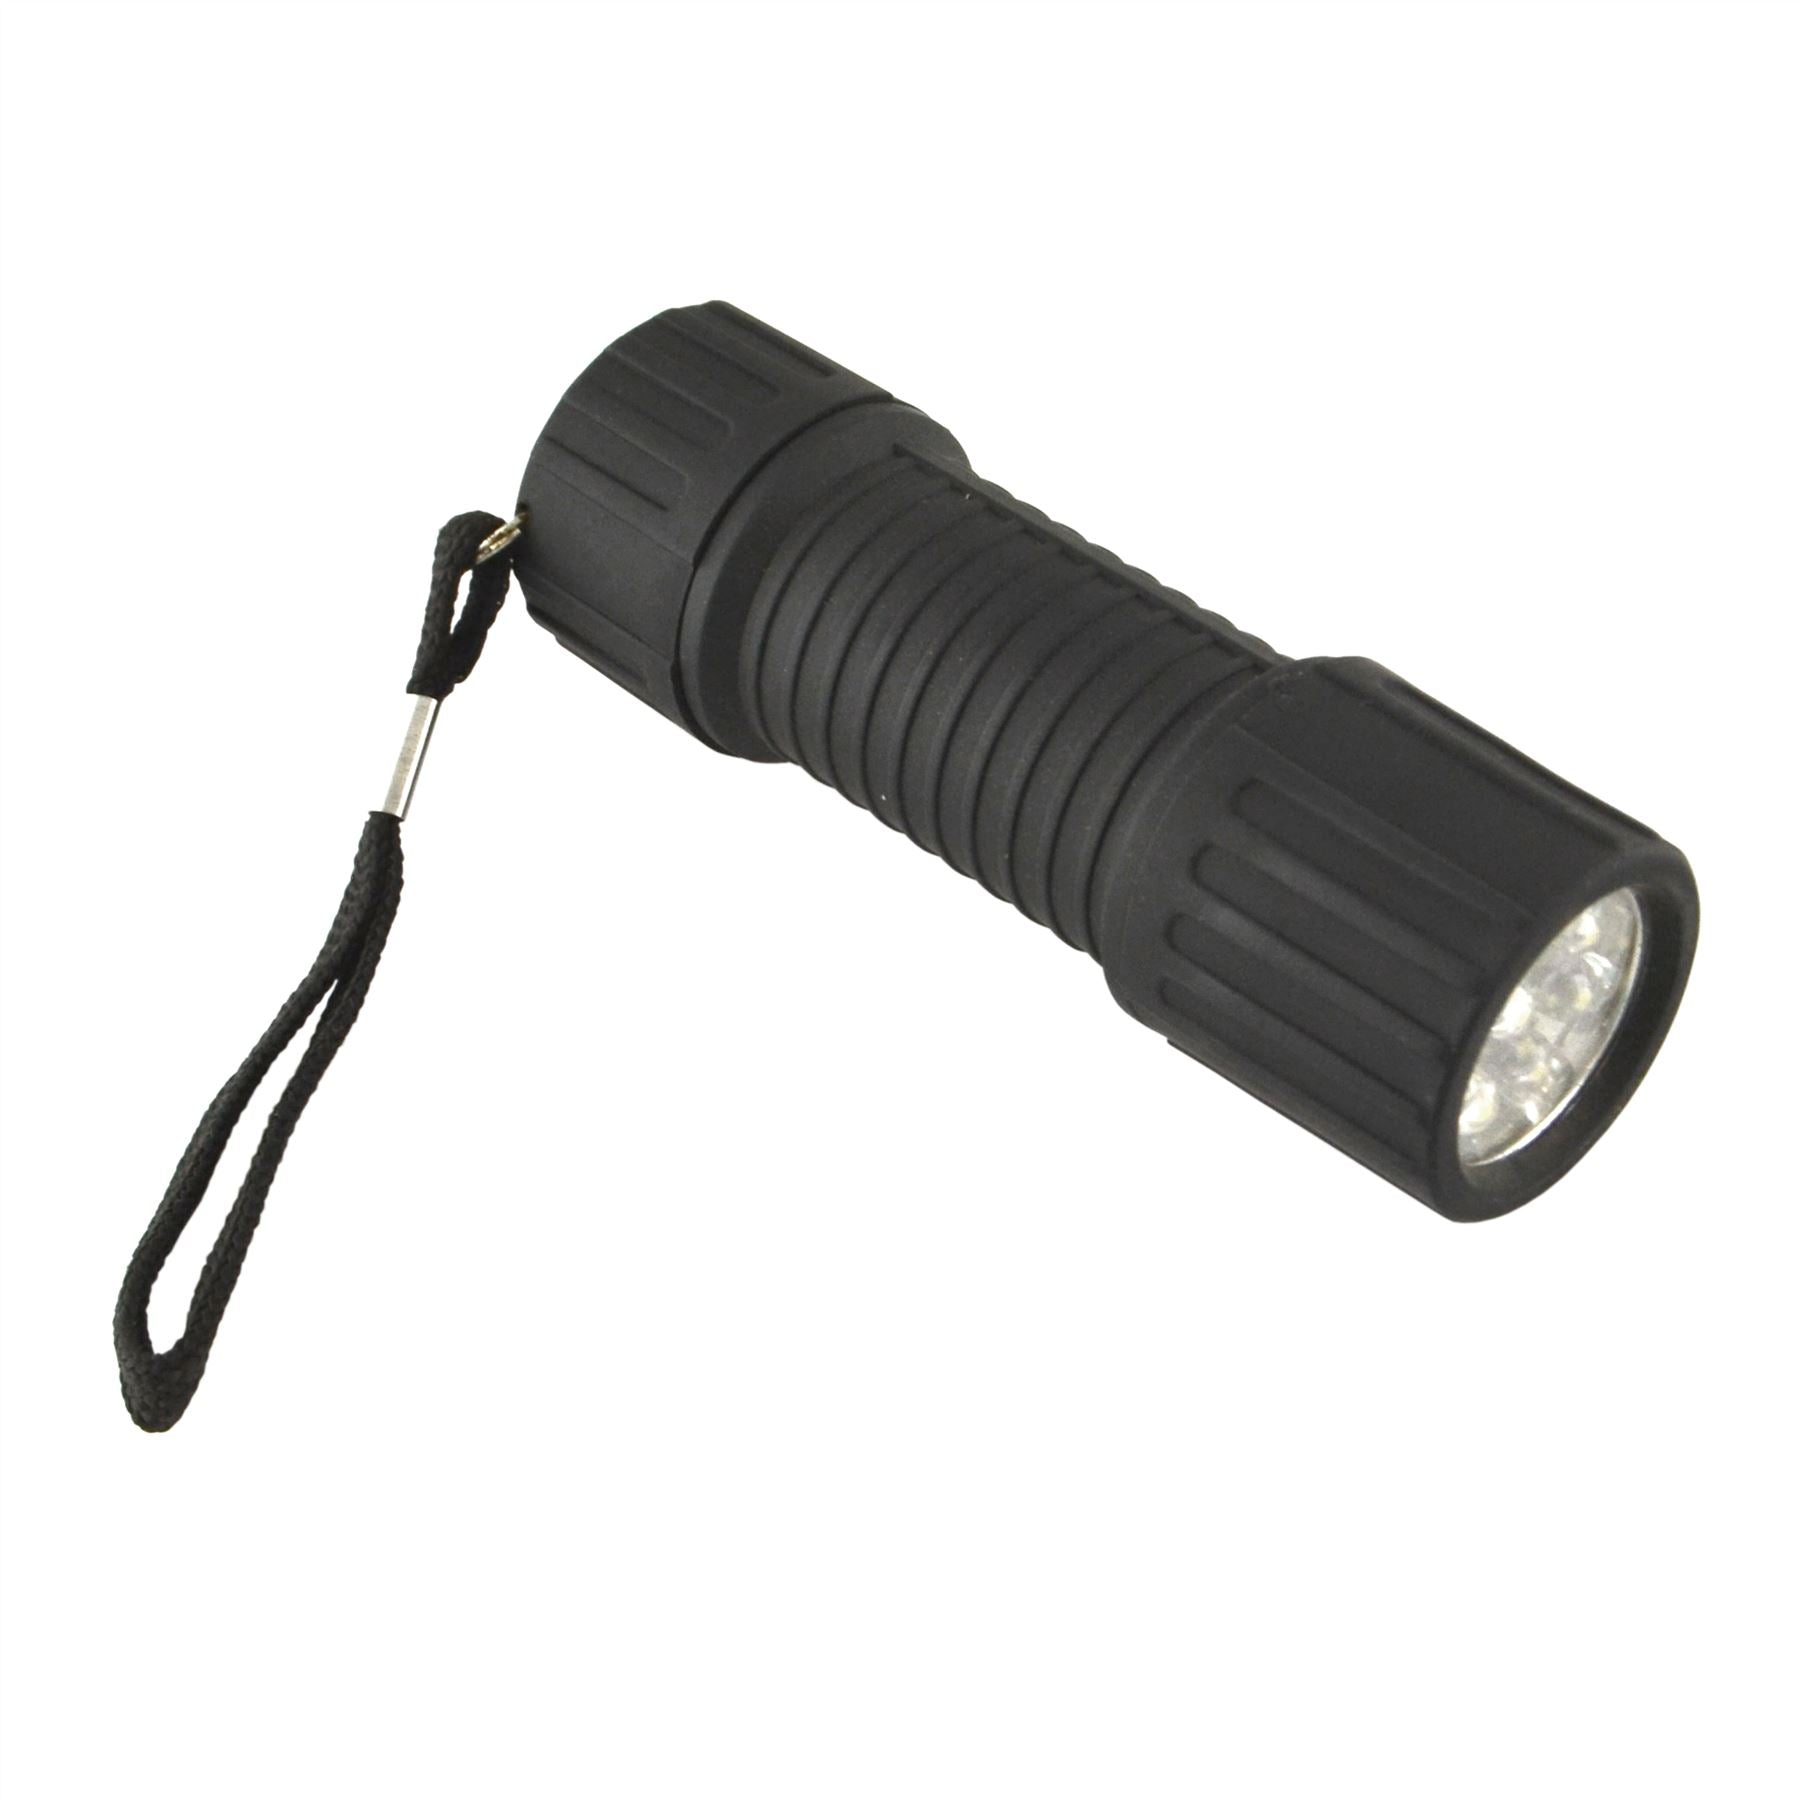 9 LED Black Torch Light Mini Flashlight Camping Hiking Rubber Case TE830